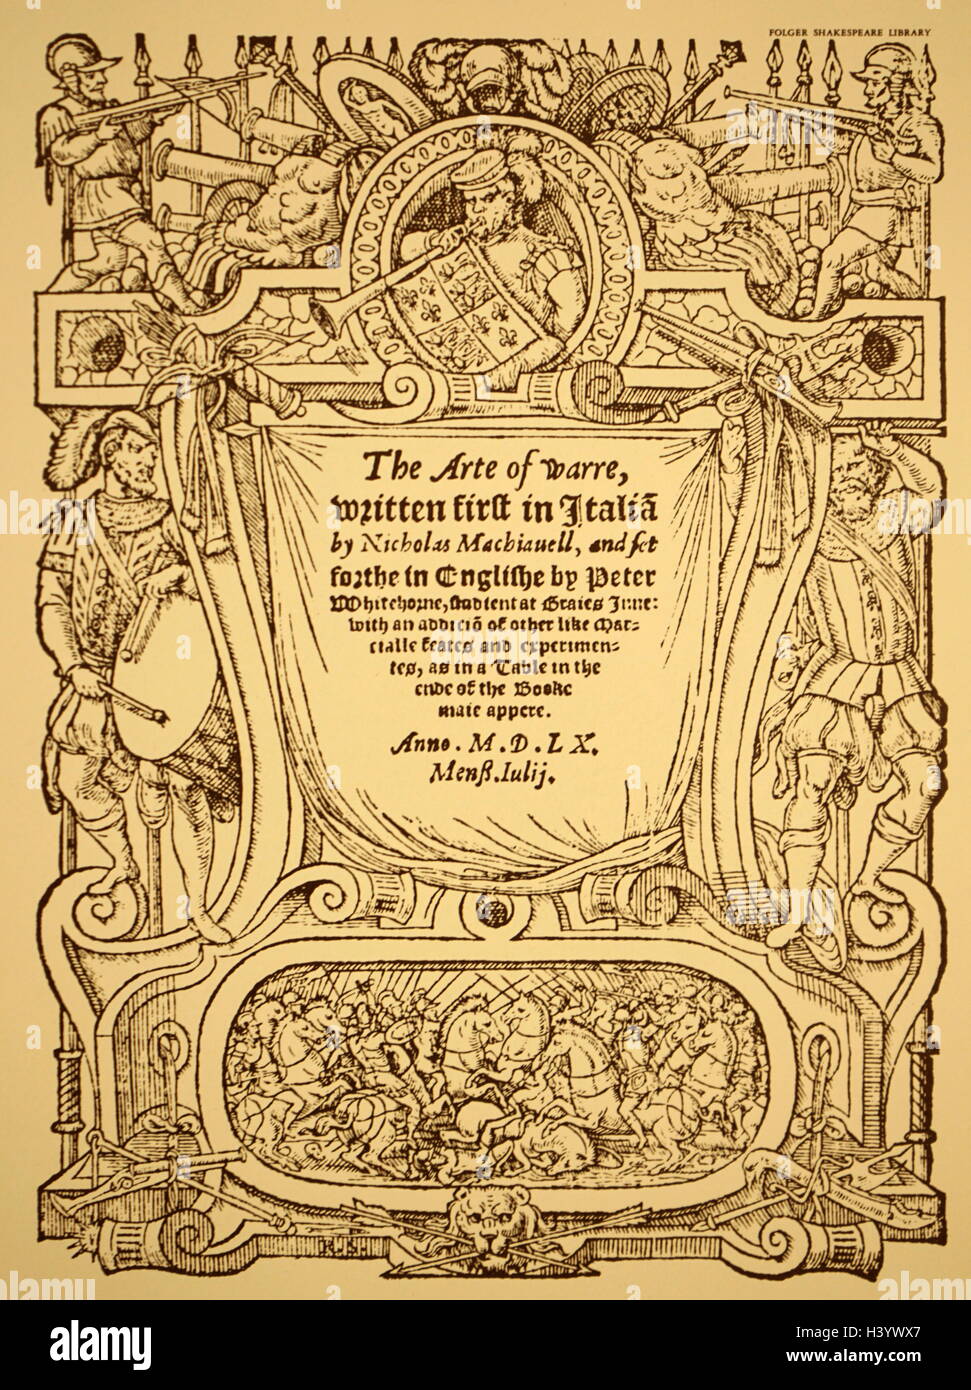 Pagina del titolo di "arte della guerra" in inglese (1562) da Niccolò Machiavelli (1469-1527) un rinascimento italiano storico e diplomatico. Datata XVI Secolo Foto Stock